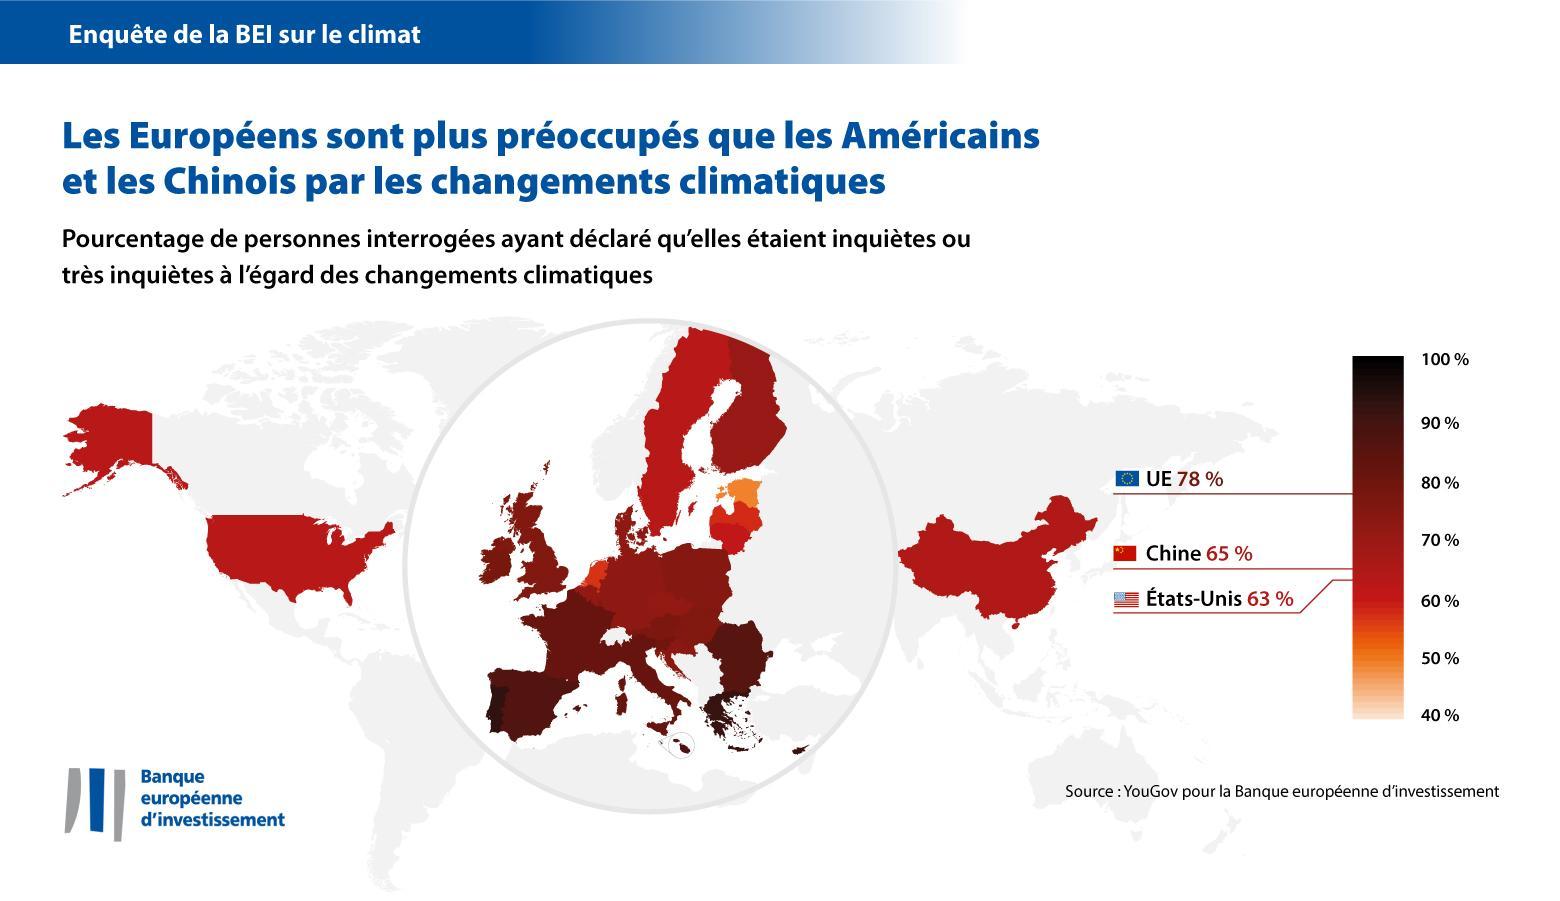 Les Européens sont plus préoccupés par les changements climatiques que les Américains et les Chinois